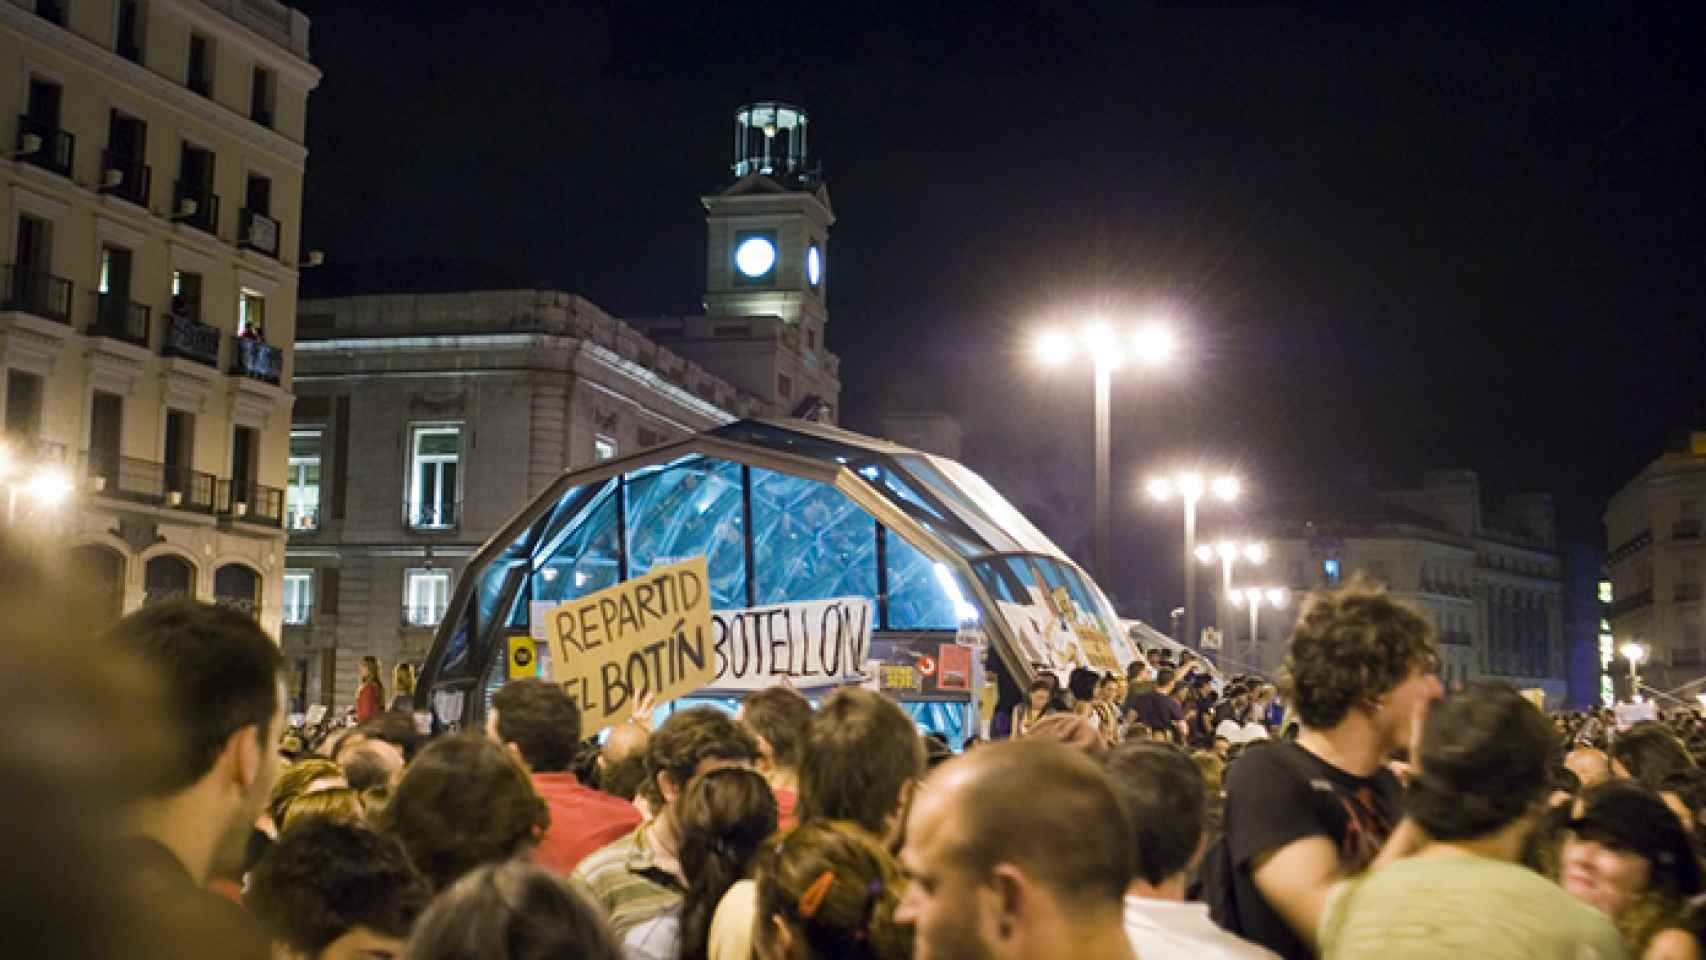 Acampada en la Puerta del Sol la noche del 21 al 22 de mayo de 2011. Foto: Publikacción